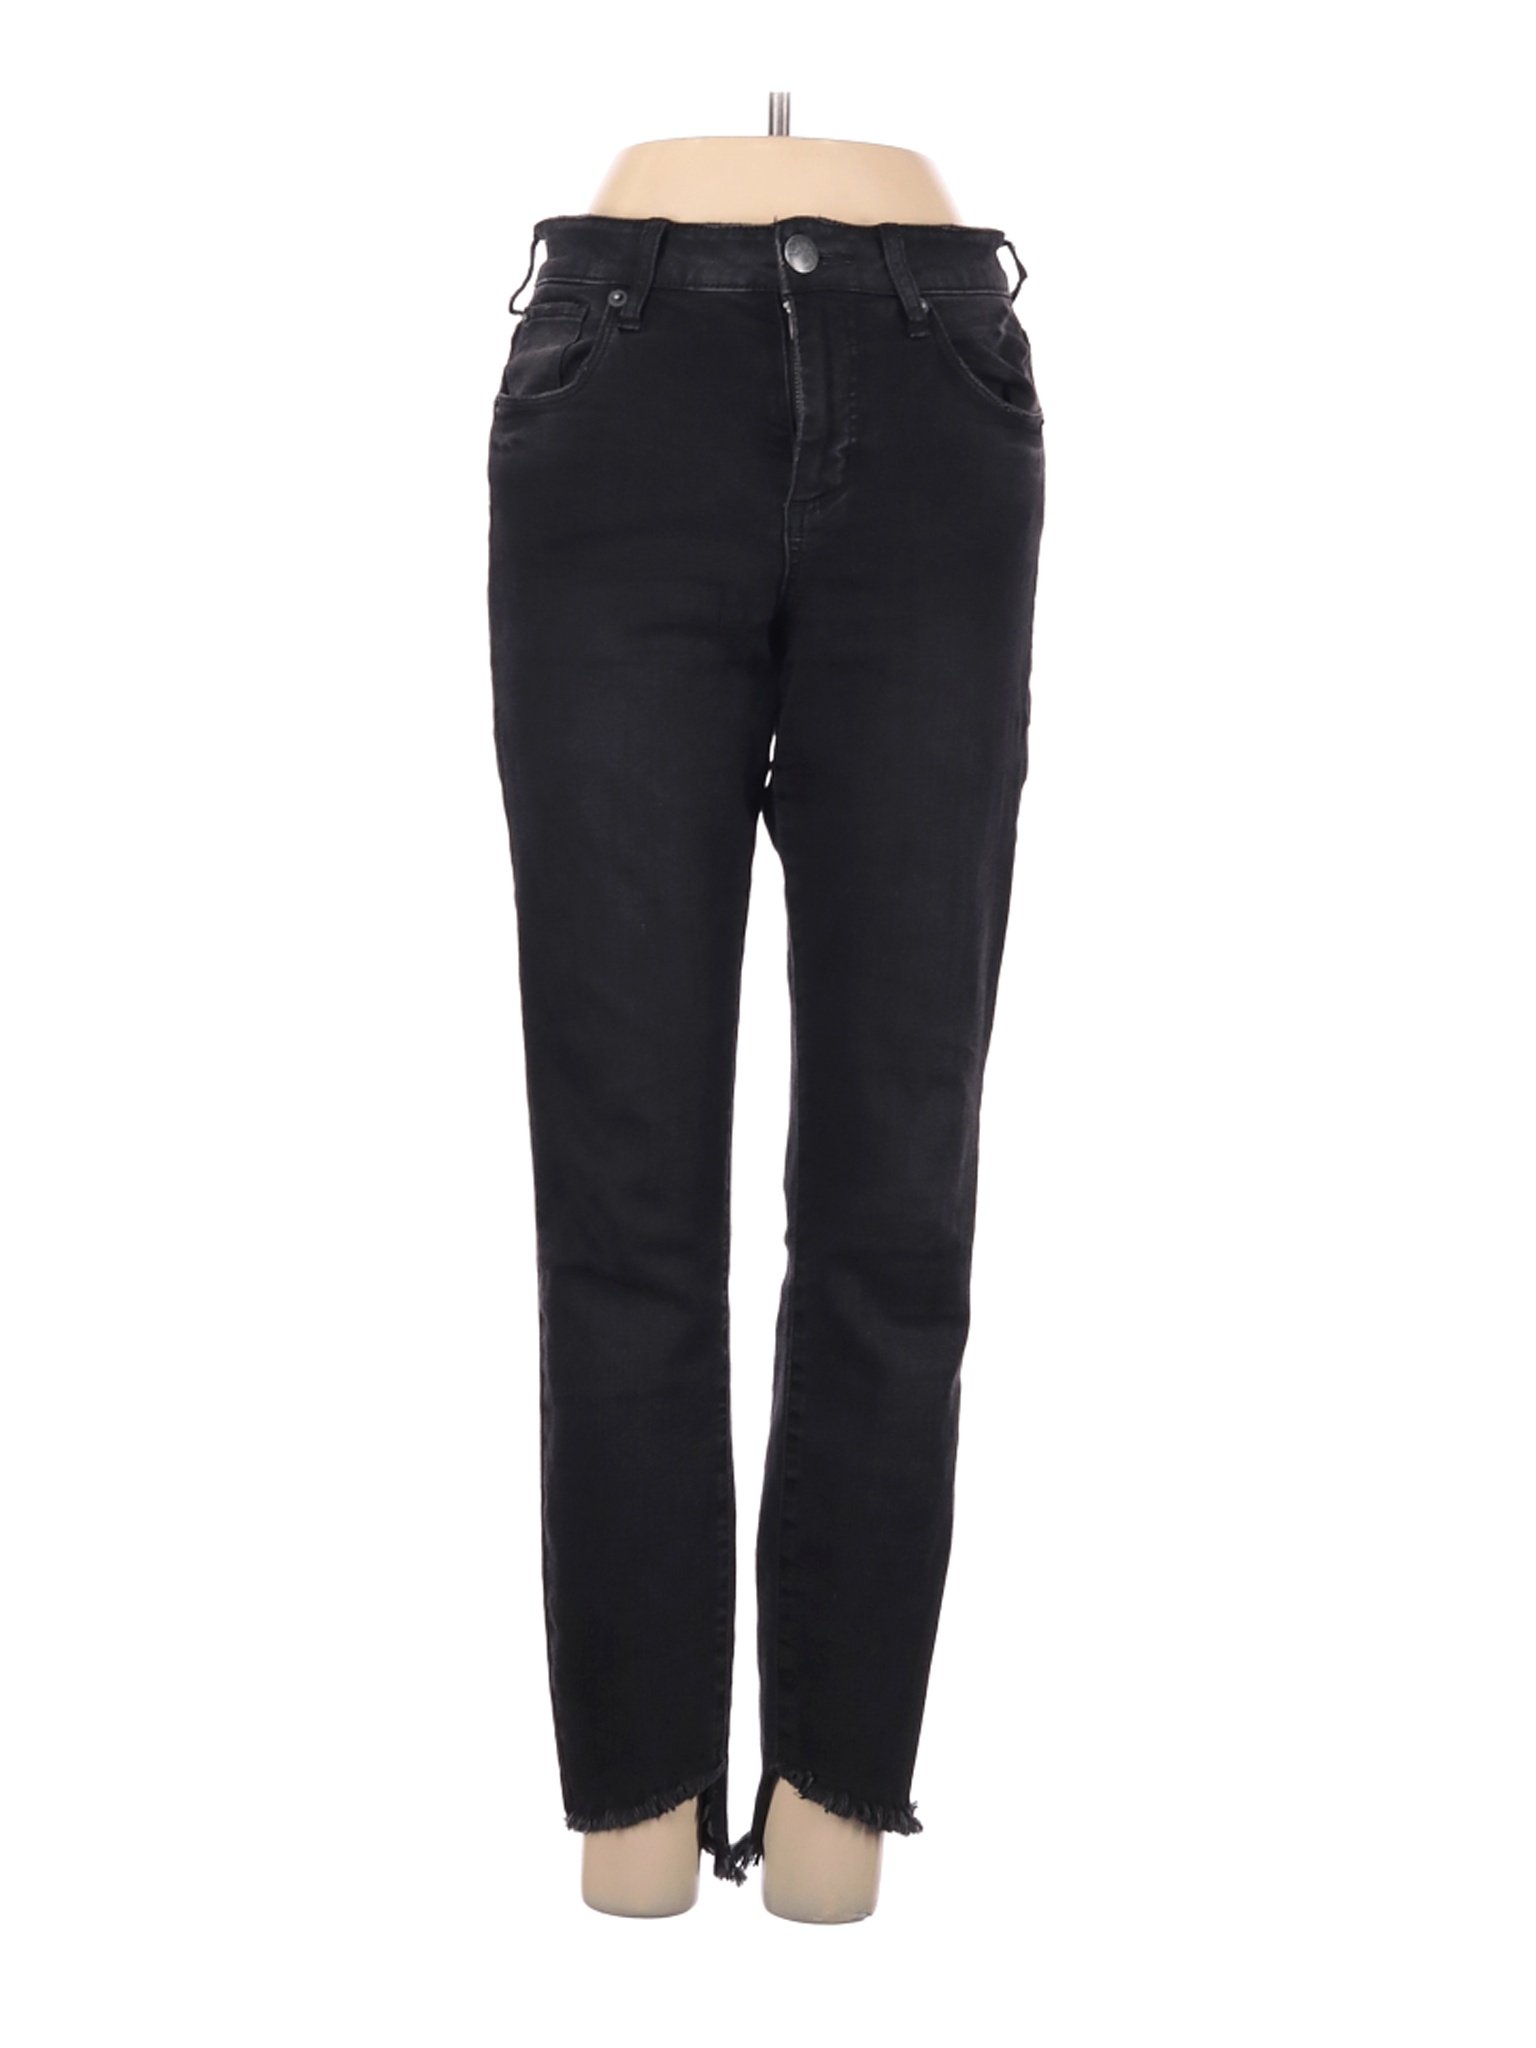 STS Blue Women Black Jeans 24W | eBay